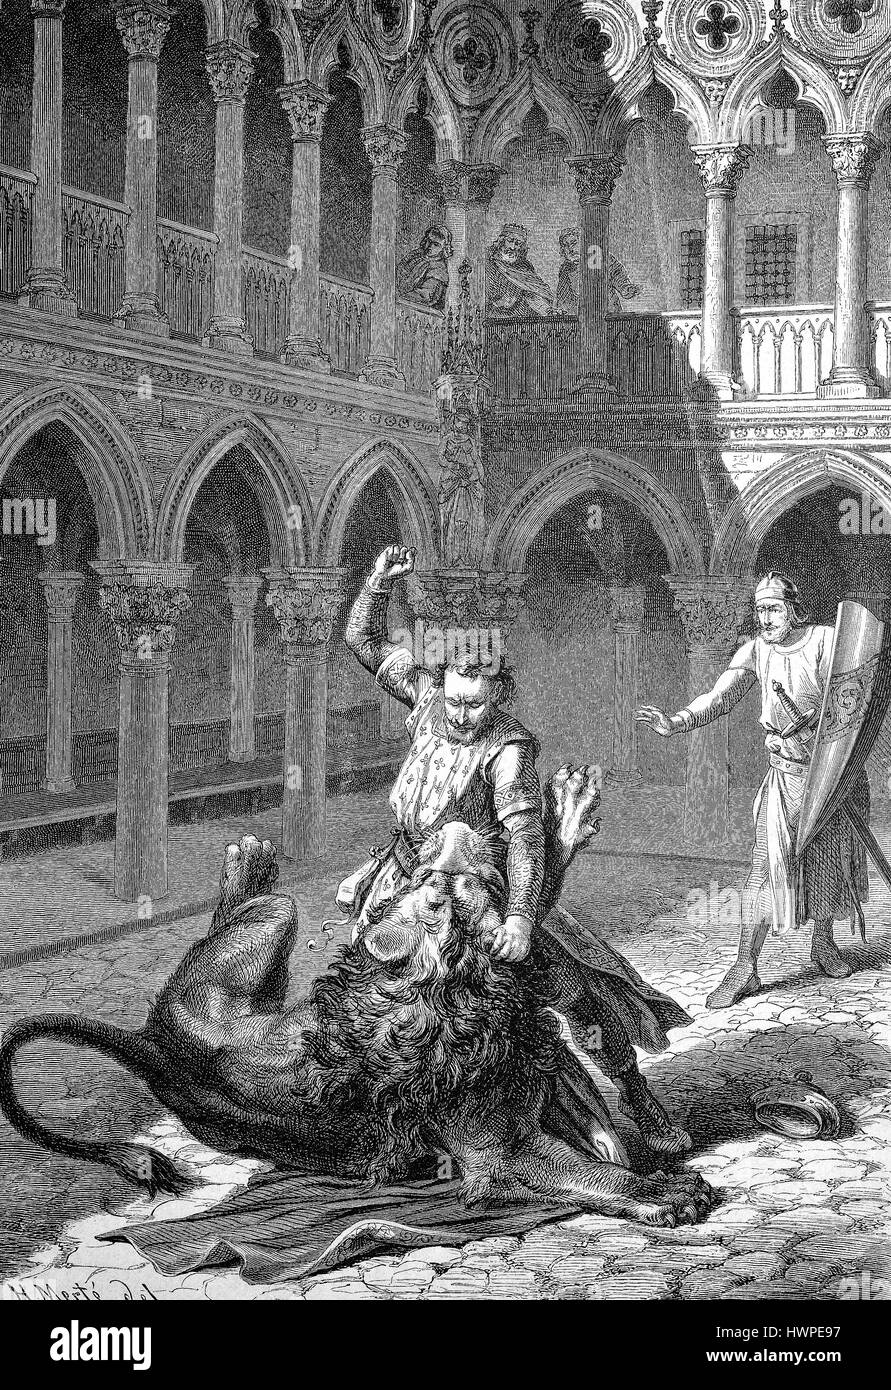 Markgraf Wiprecht Groitzscher, genannt der ältere, 1050-1124-Kämpfe in Rom gegen einen Löwen, Reproduktion einer original Holzschnitt aus dem Jahr 1882, digital verbessert Stockfoto